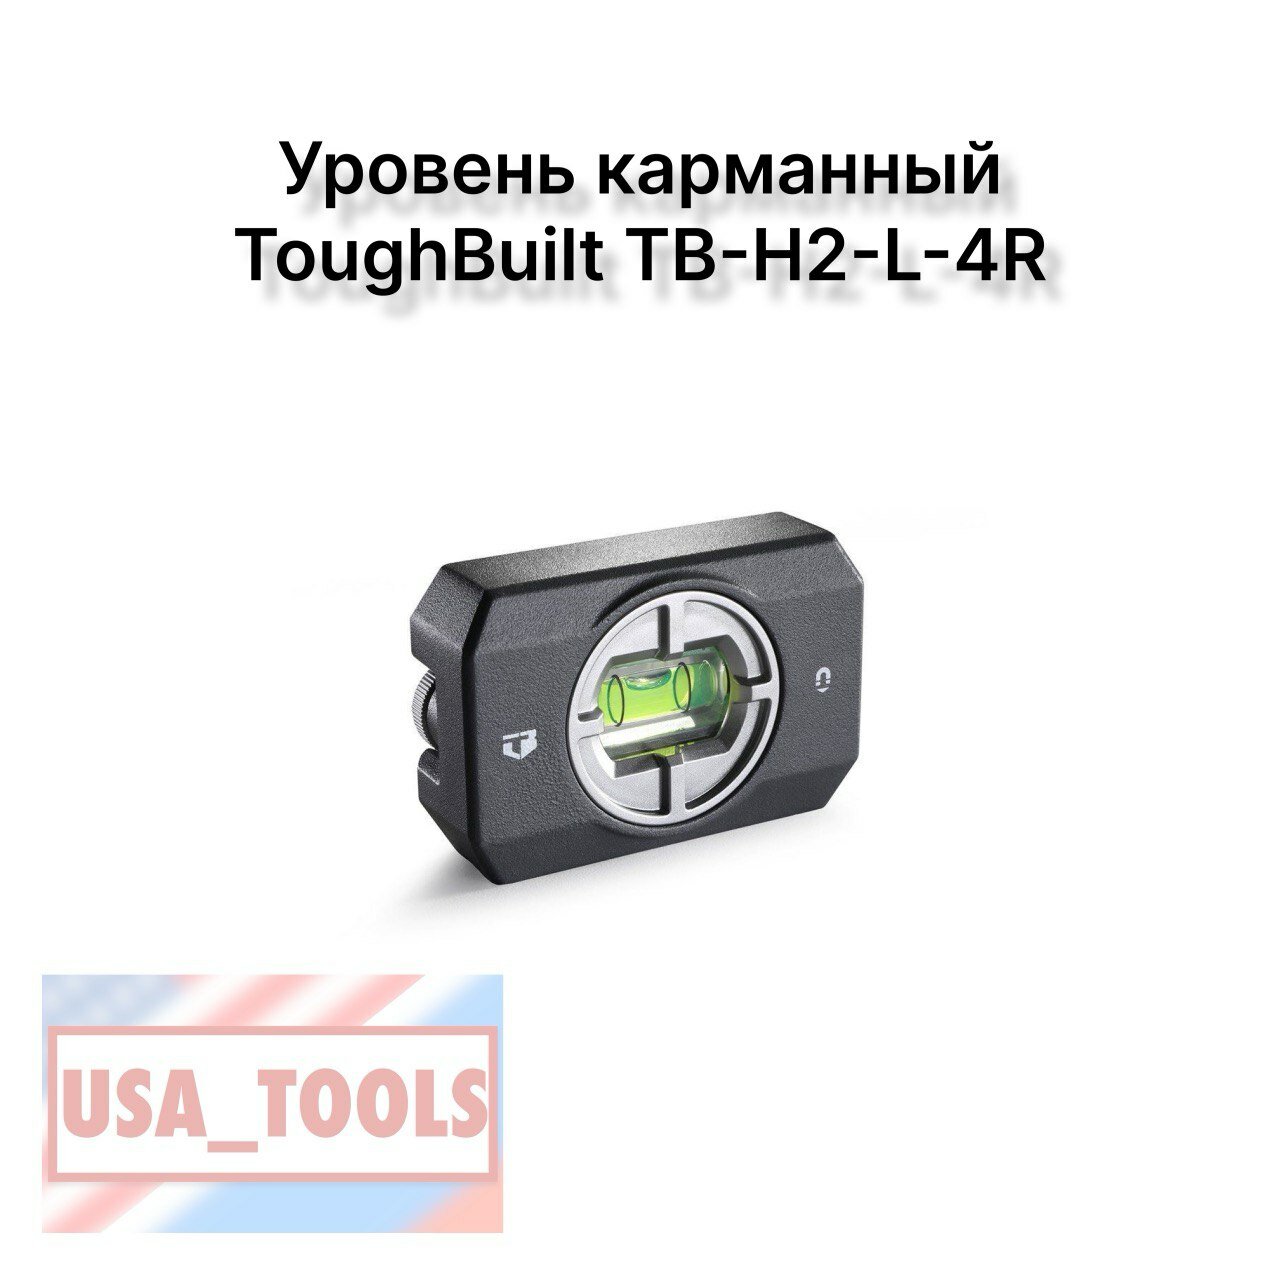 Уровень карманный ToughBuilt TB-H2-L-4R